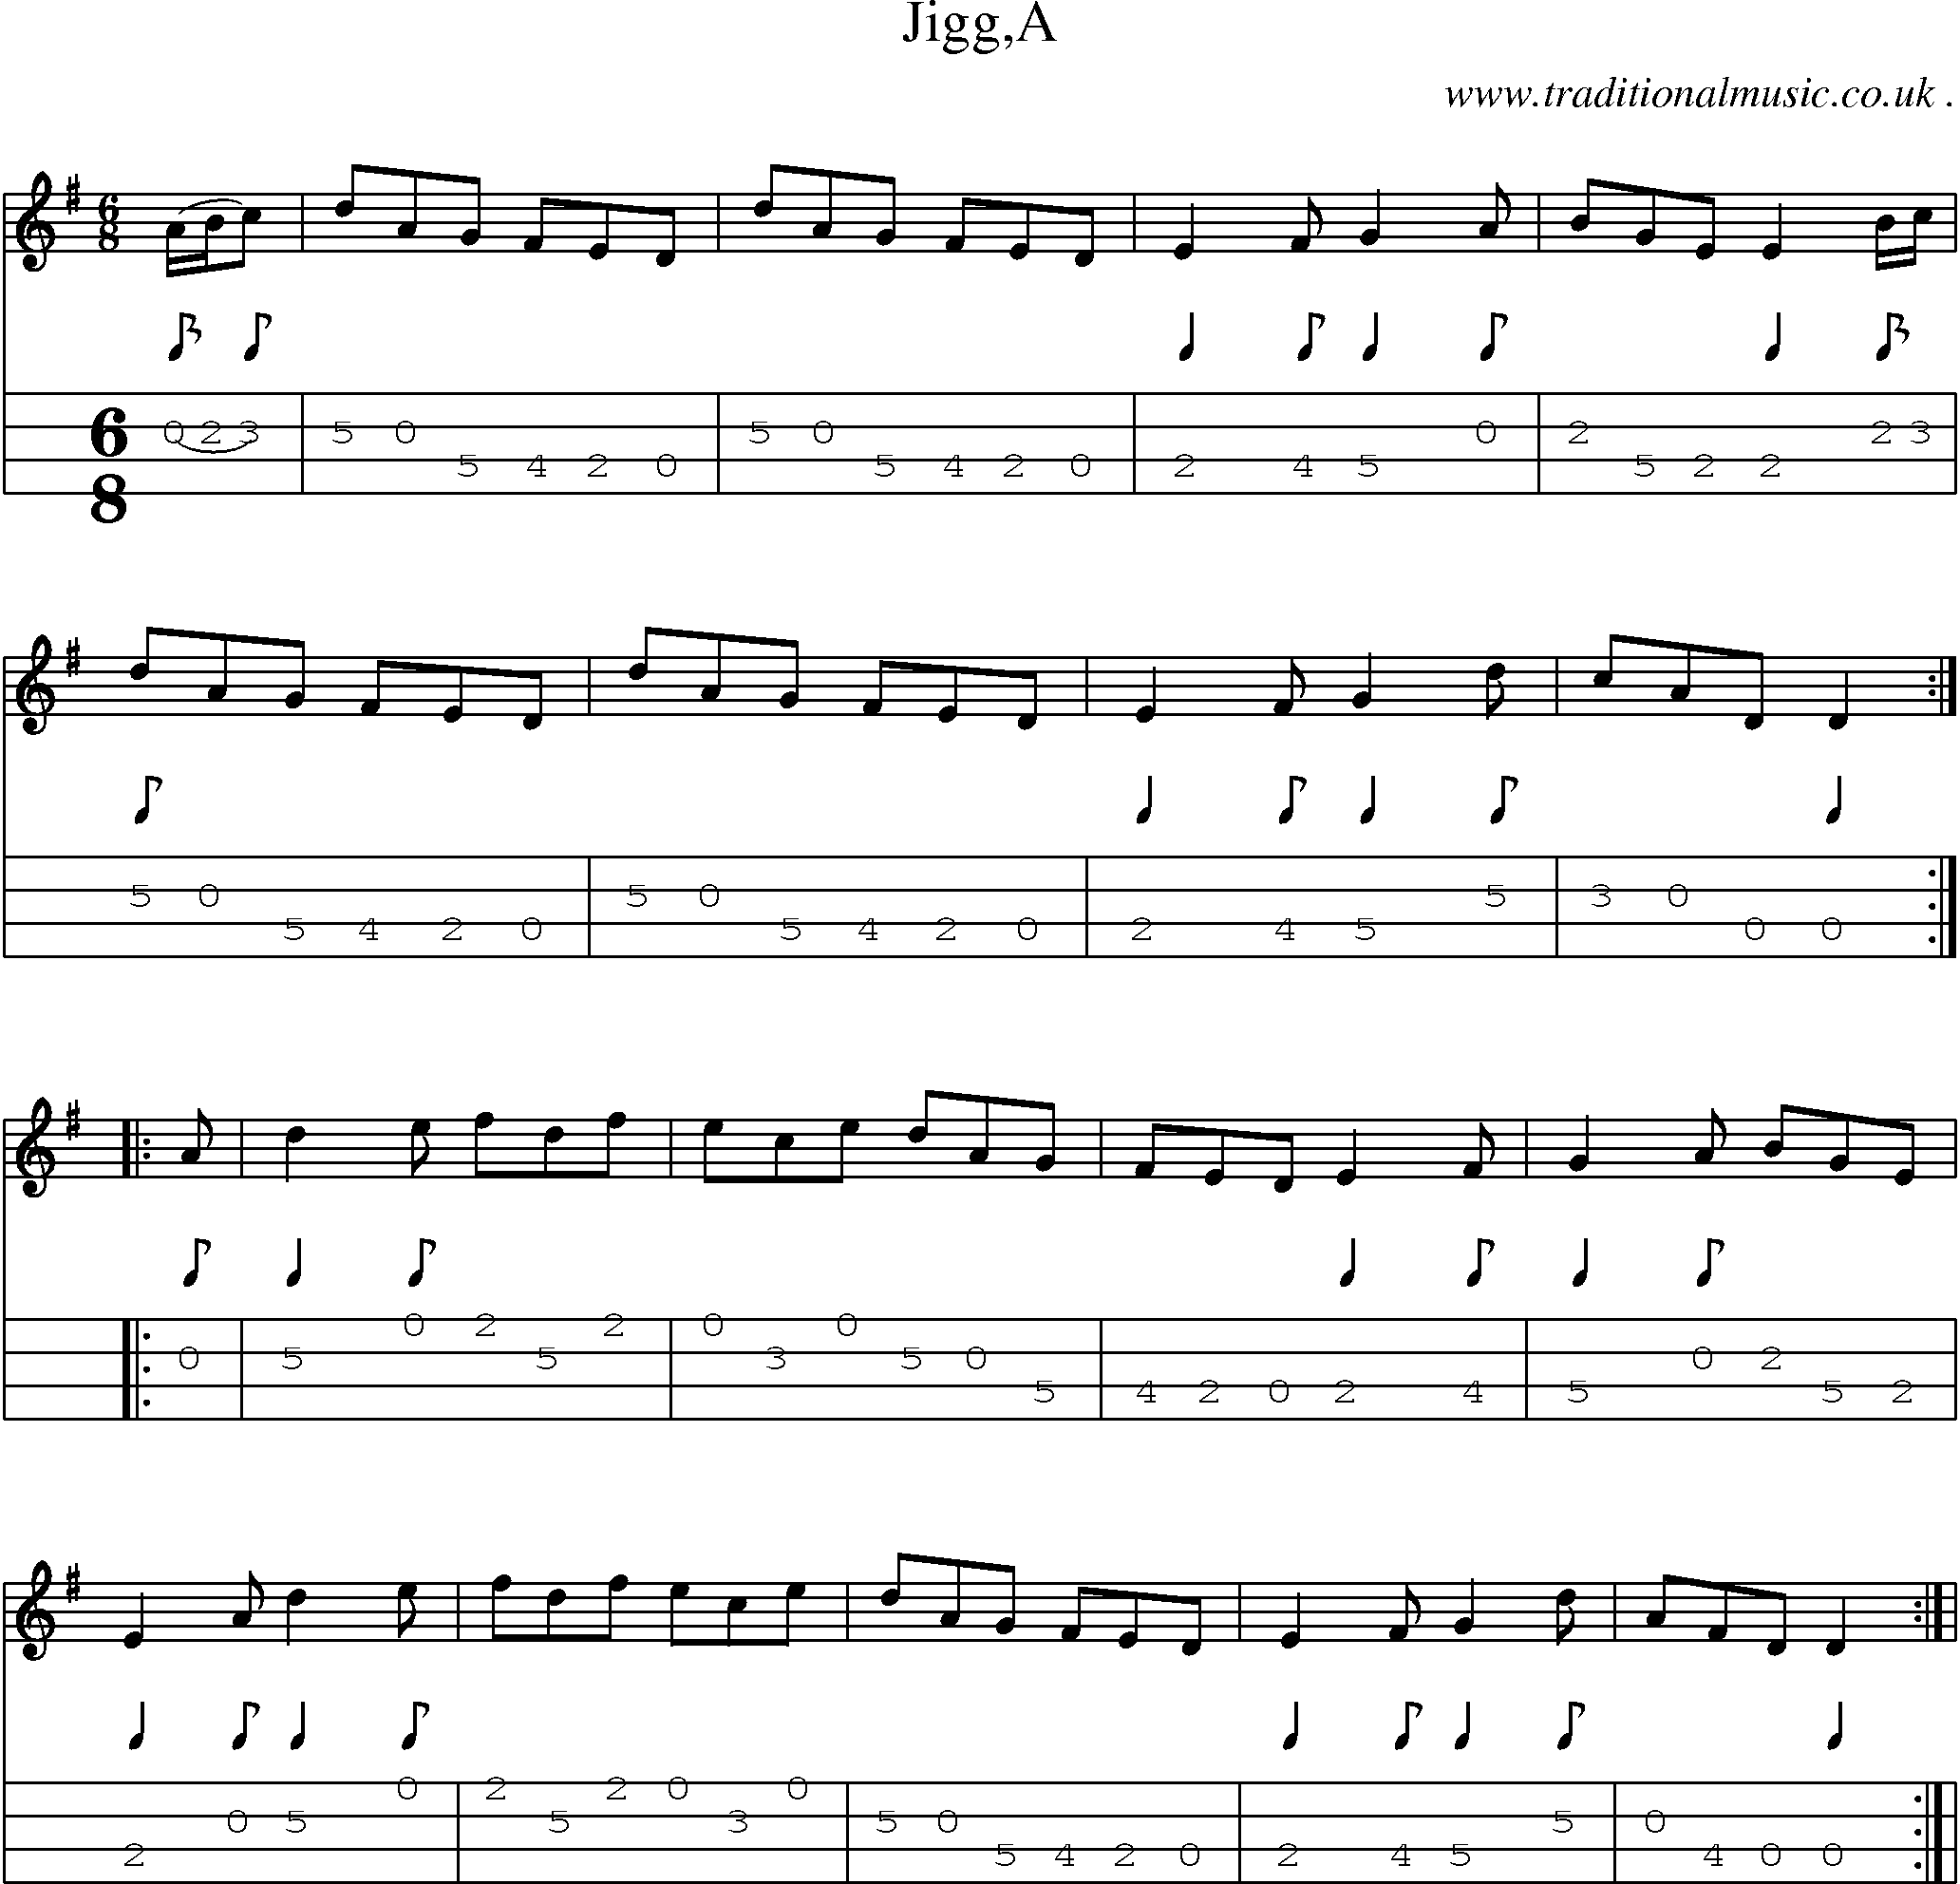 Sheet-Music and Mandolin Tabs for Jigga